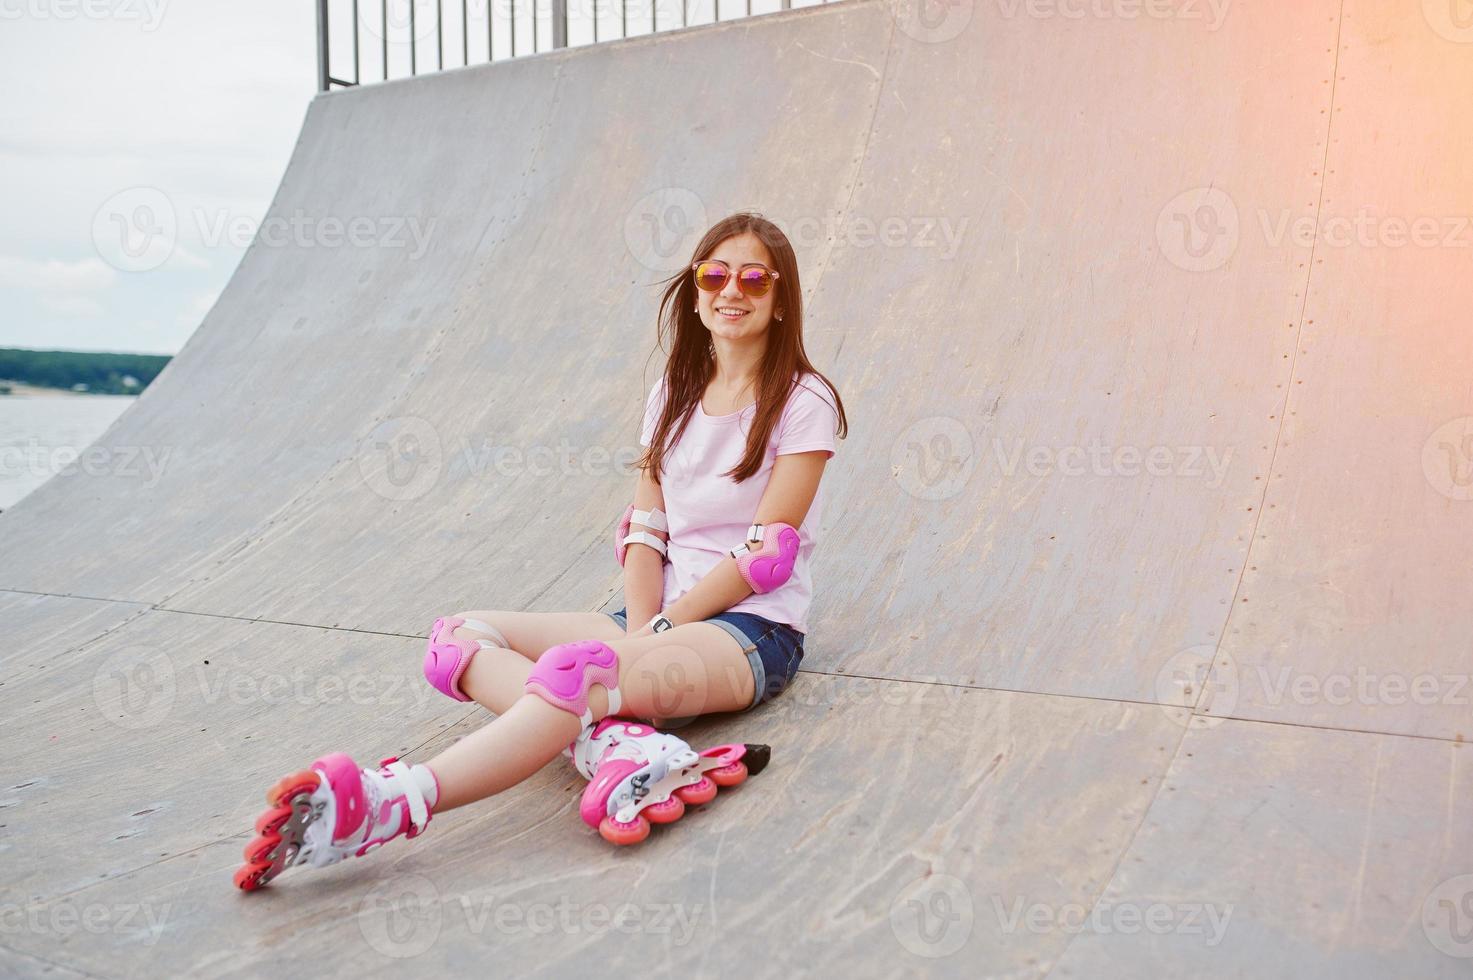 porträtt av en vacker flicka som sitter på rullskridskobanan utomhus i shorts, t-shirt, solglasögon och rullskridskor. foto